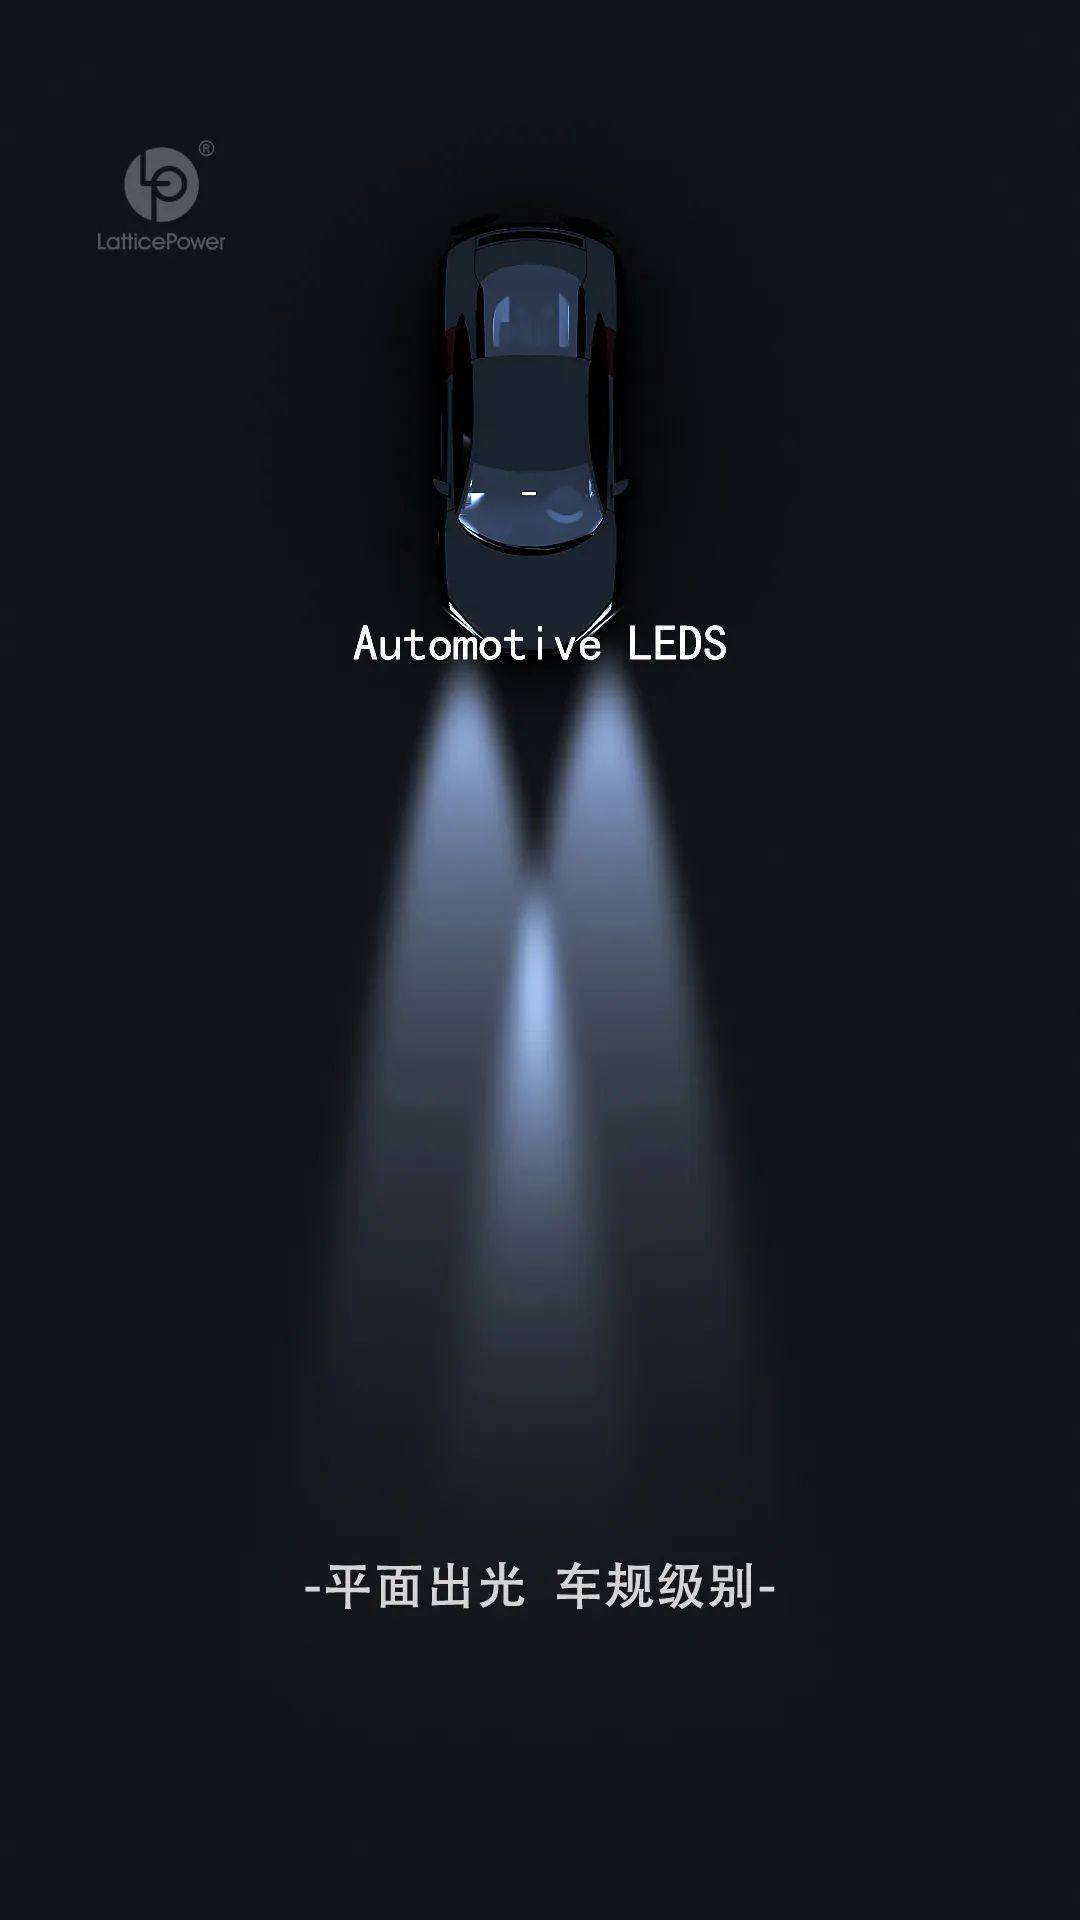 晶能光电汽车前装车灯LEDs产品详述